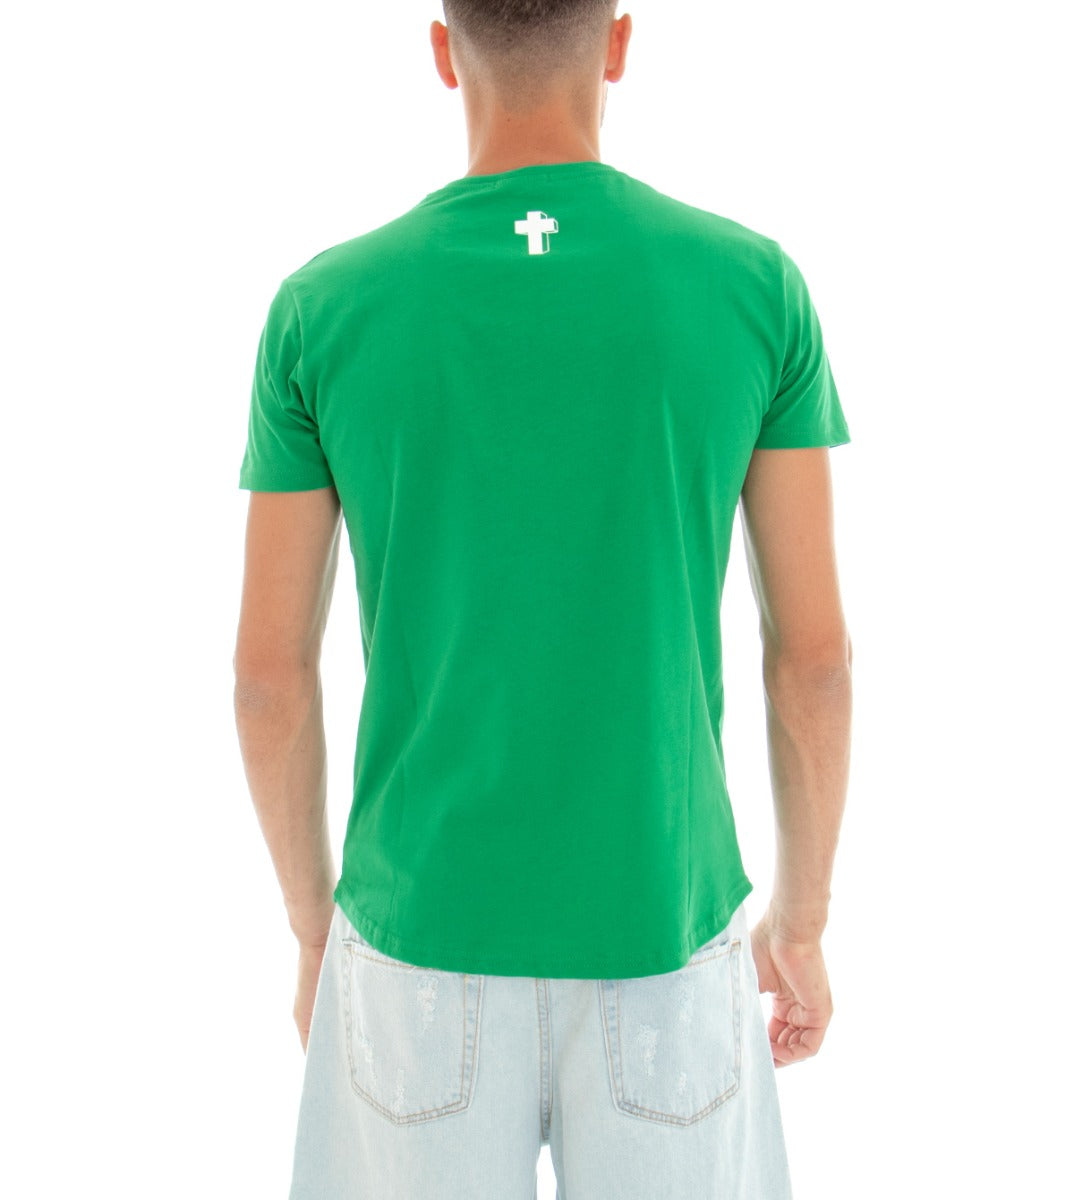 T-shirt Uomo Maglia Manica Corta Tinta Unita Verde Stampa Croce Girocollo Cotone GIOSAL